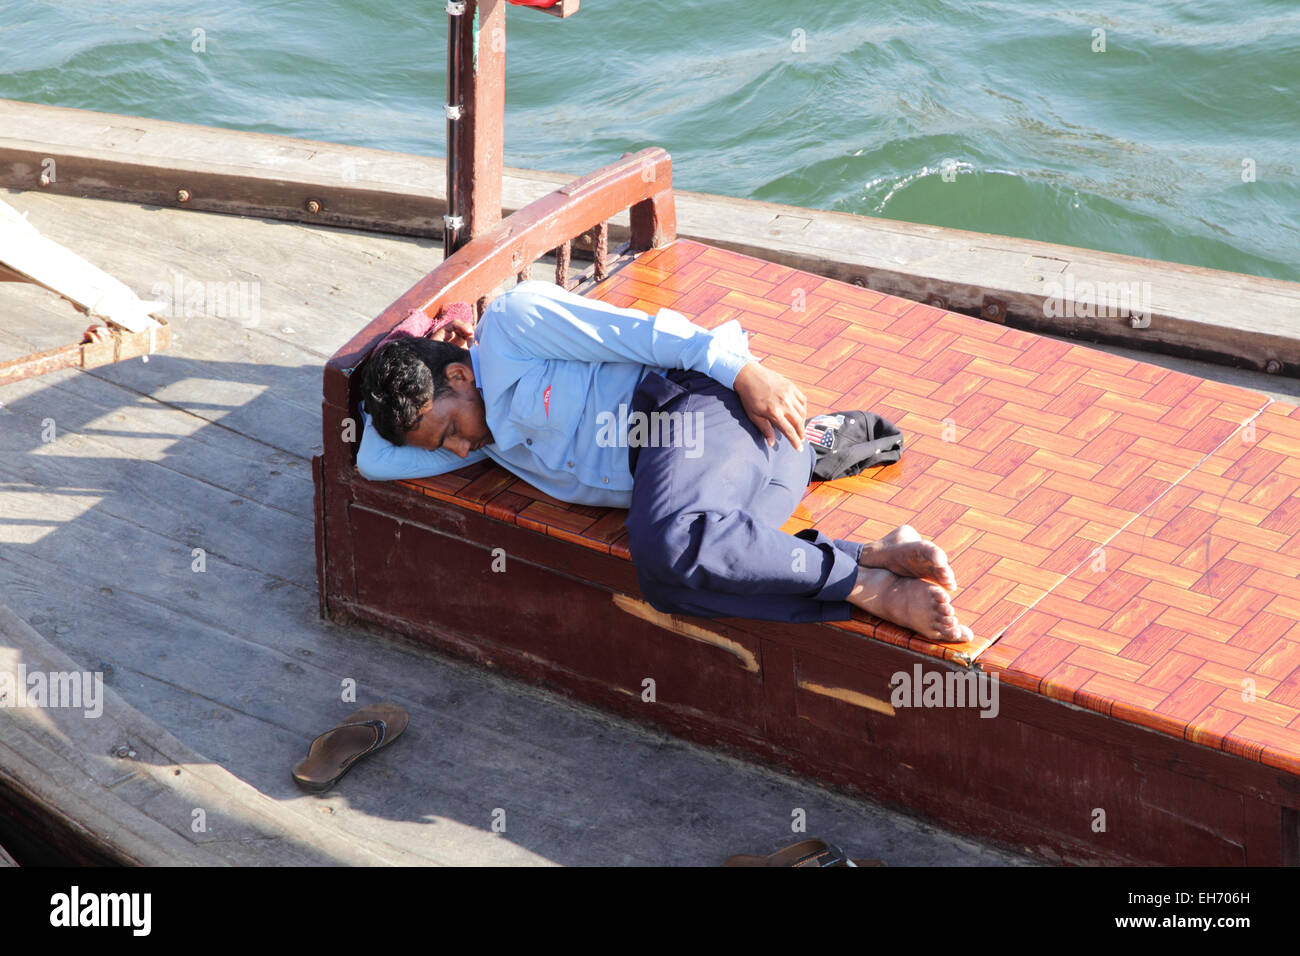 L'homme de dormir sur un abra, un bateau typique, sur la Crique de Dubaï à Dubaï, Émirats arabes unis. Banque D'Images